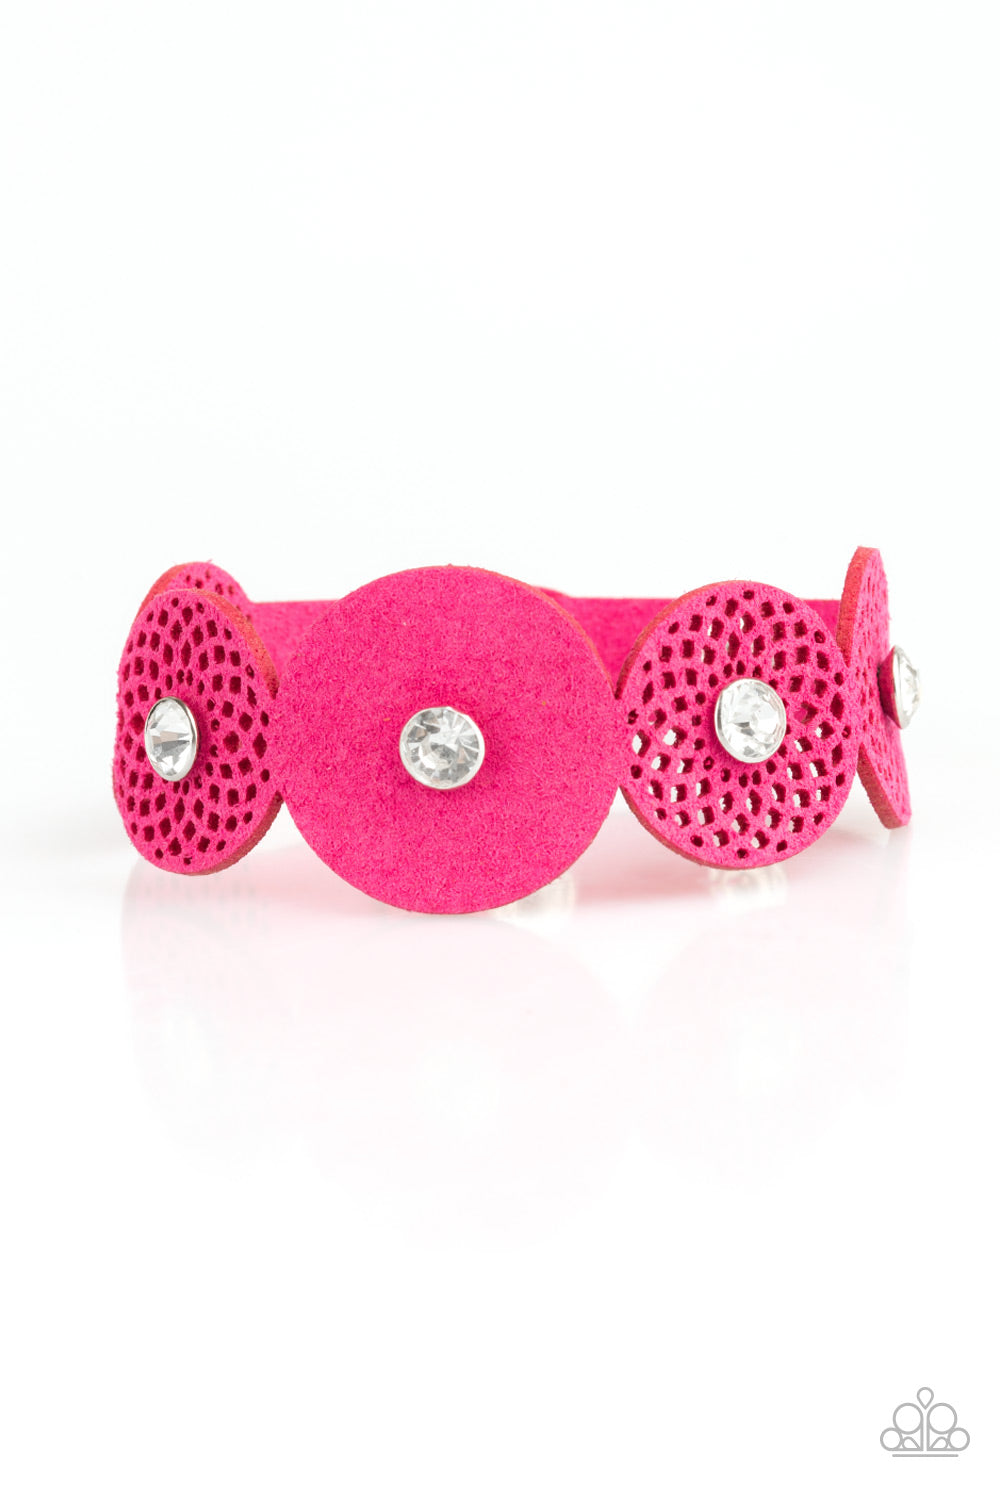 Poppin PopStar Bracelet__Pink